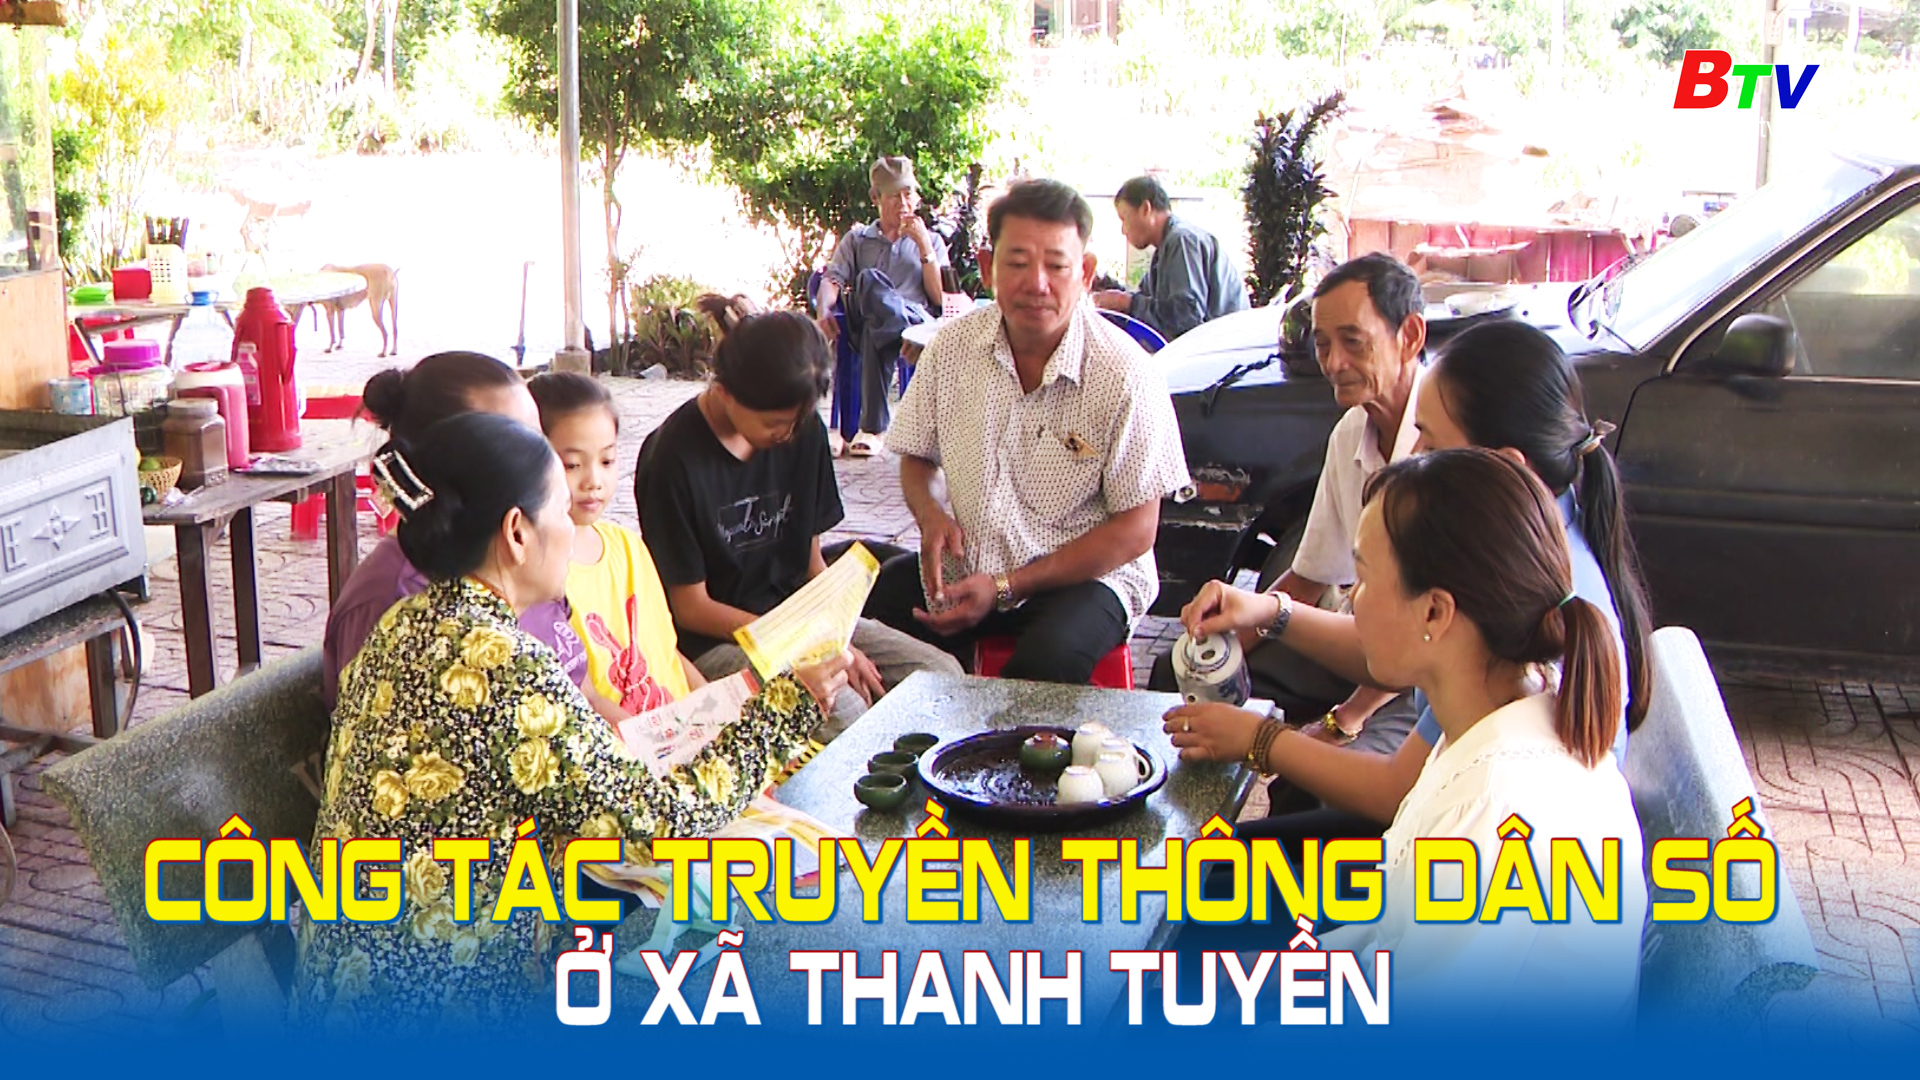 Công tác truyền thông dân số ở xã Thanh Tuyền